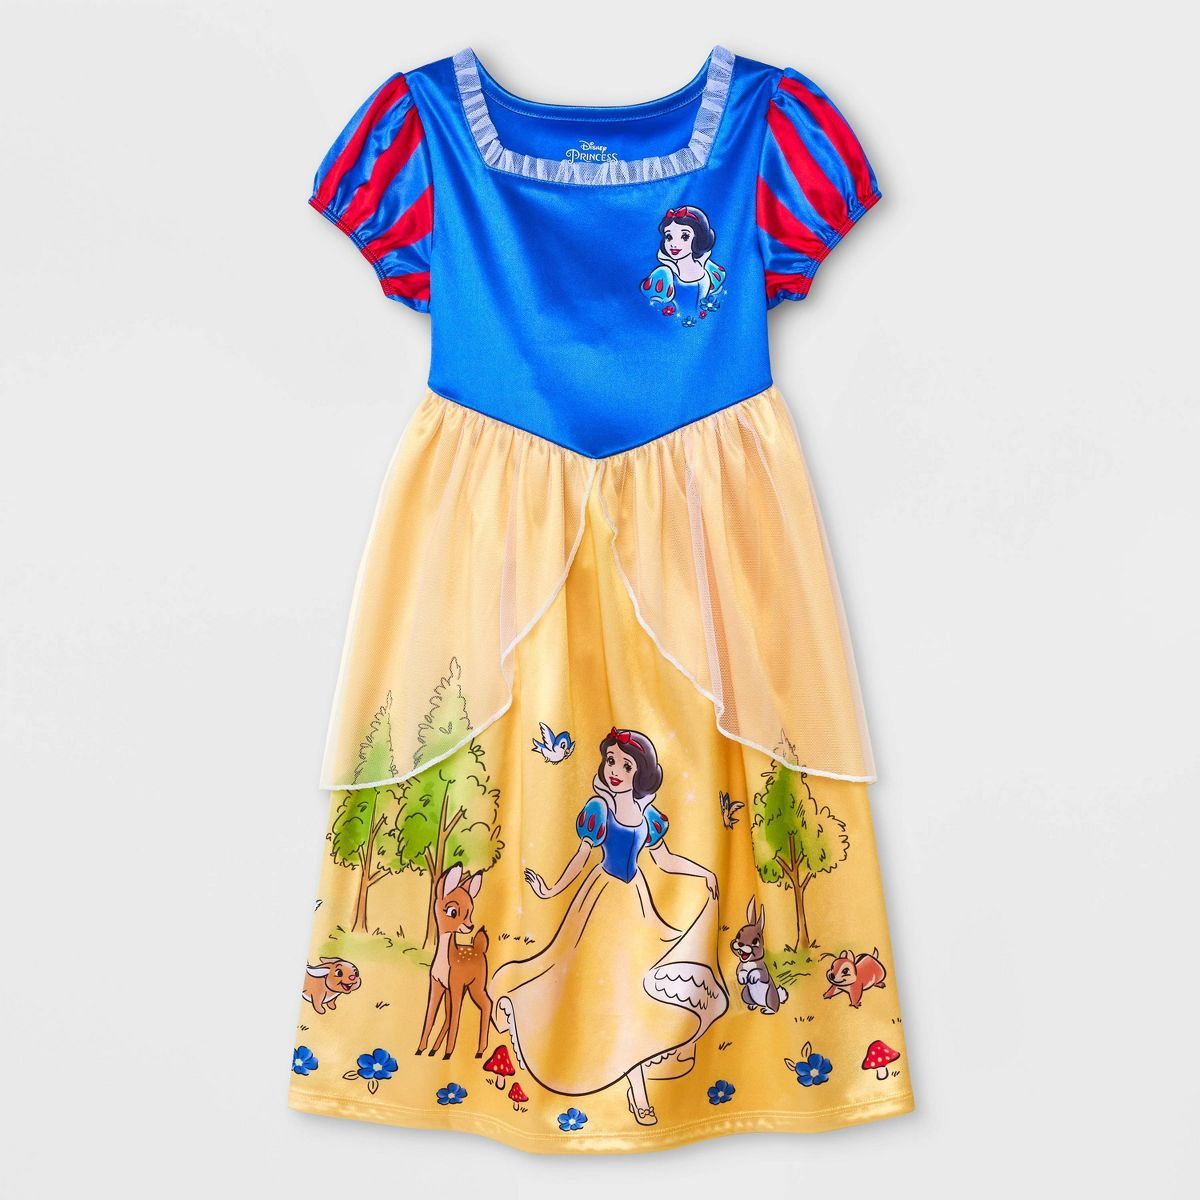 Toddler Girls' Disney Princess Snow White NightGown Pajama - Blue | Target